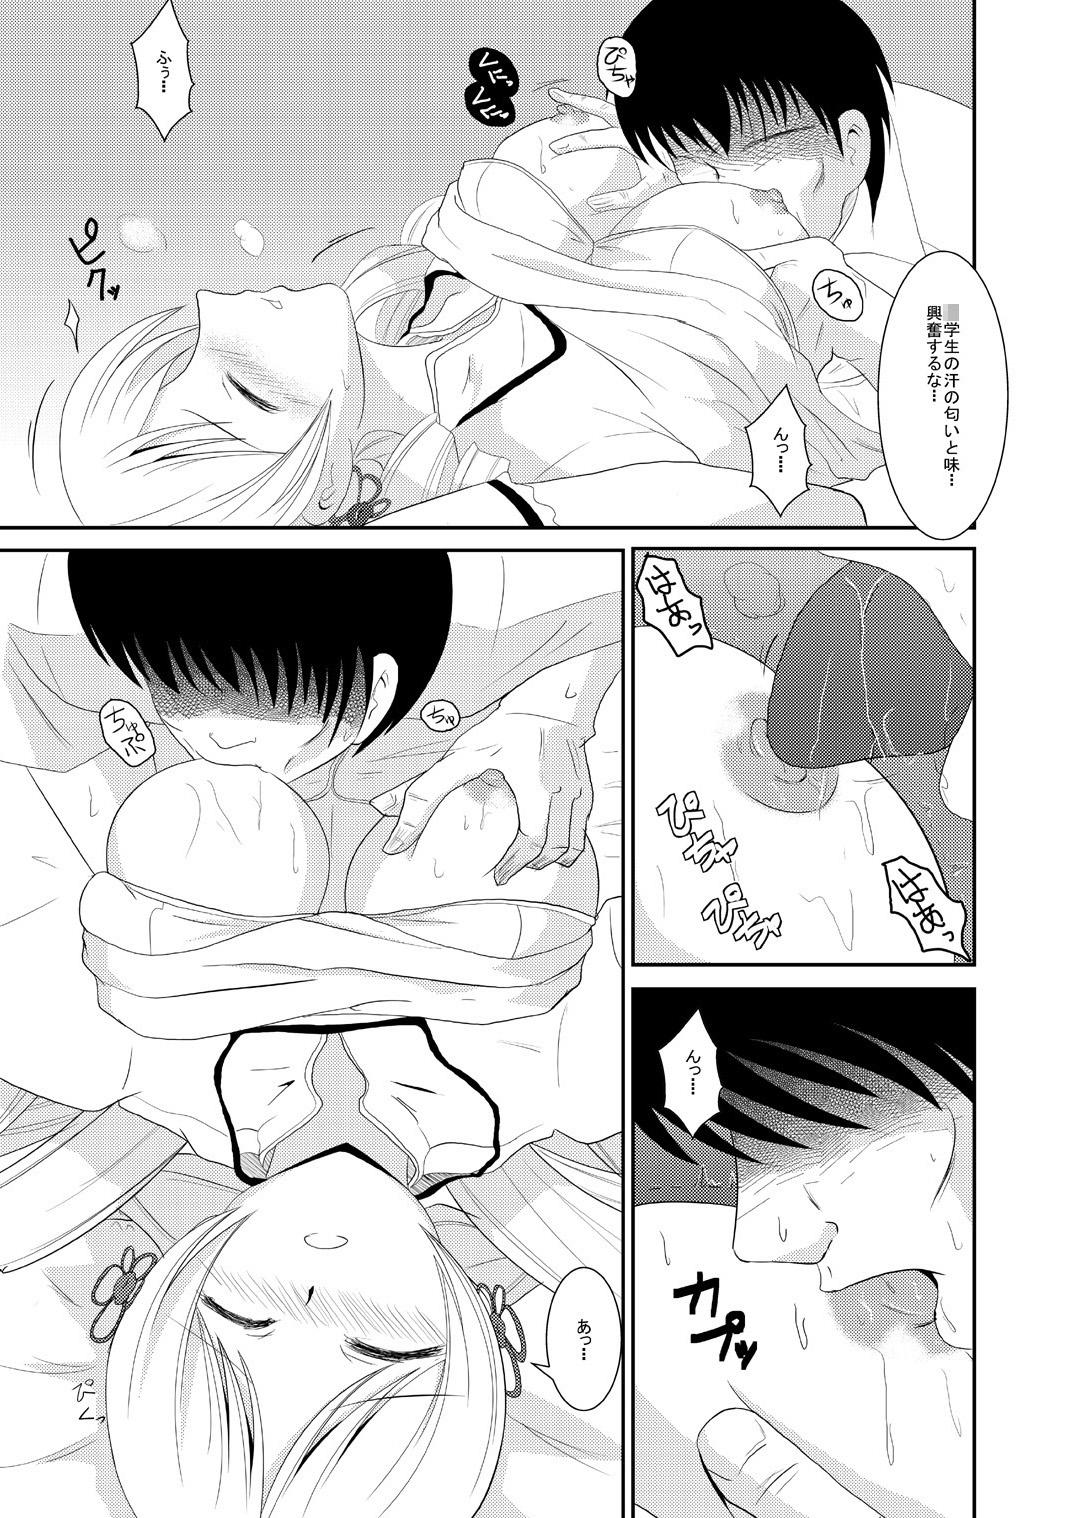 Amature Jitsuroku Rape "Watashitachi ga Shoujo Janaku Natta hi" - Puella magi madoka magica Rimjob - Page 12